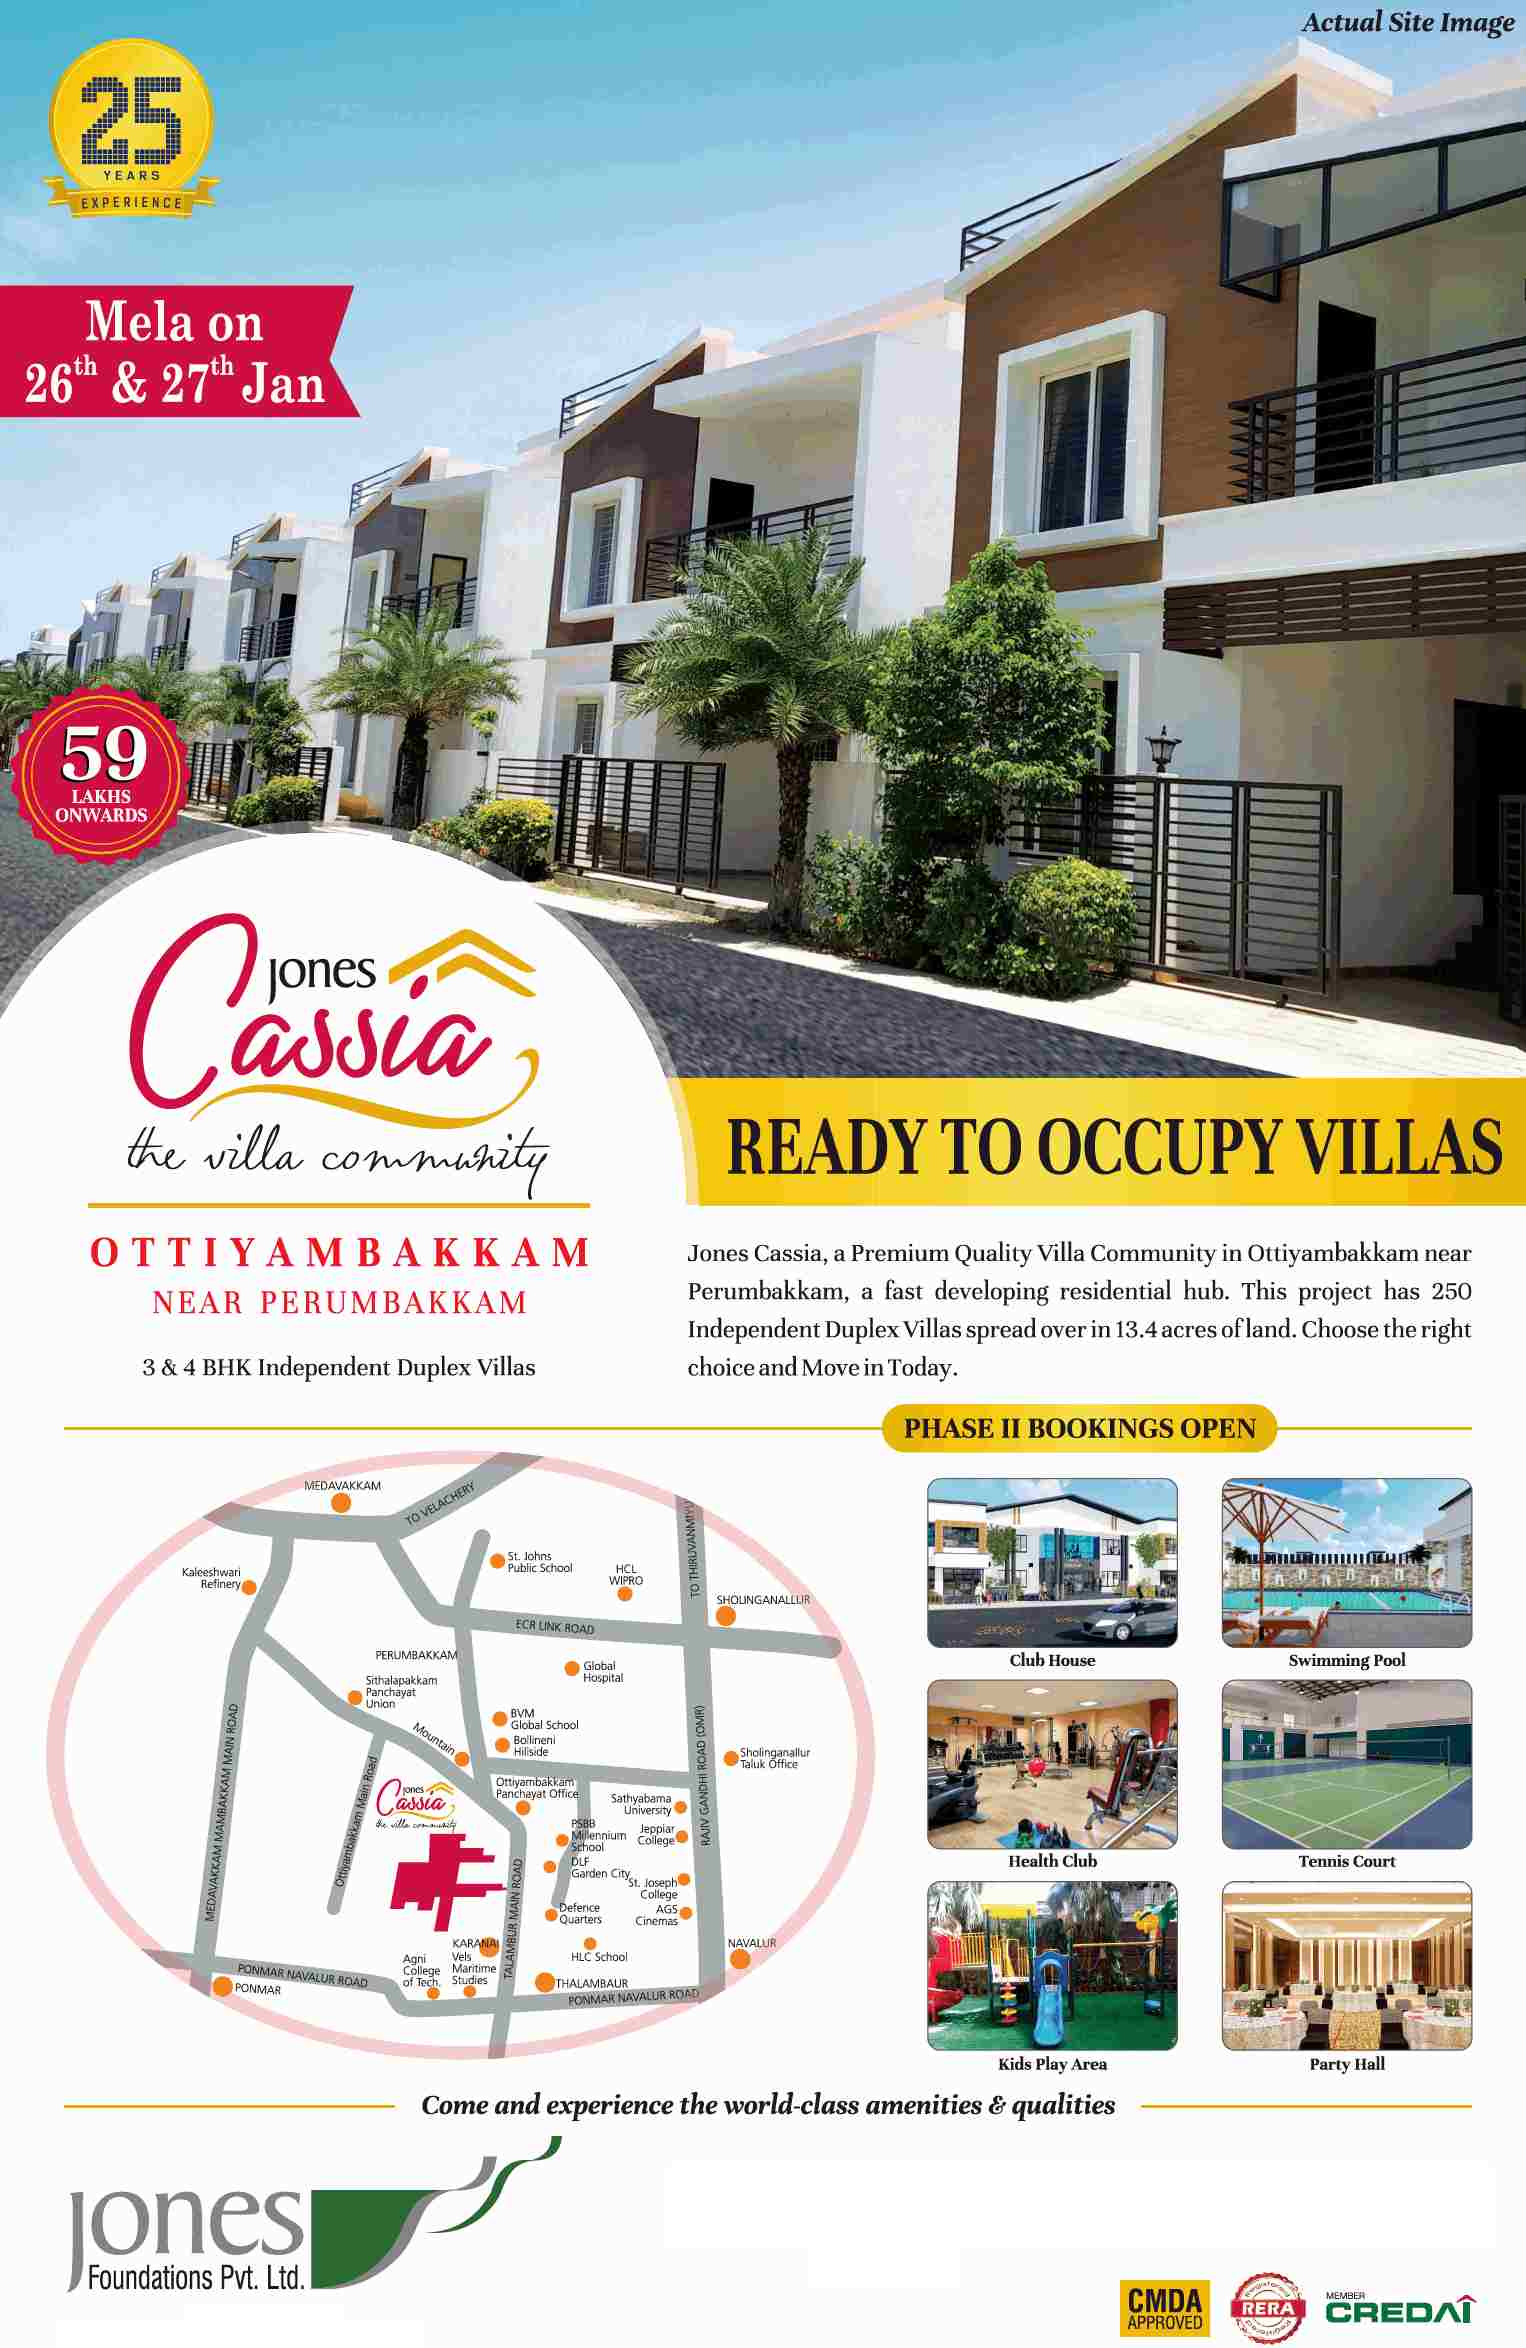 Book 3 & 4 BHK independent duplex villas at Jones Cassia in Chennai Update